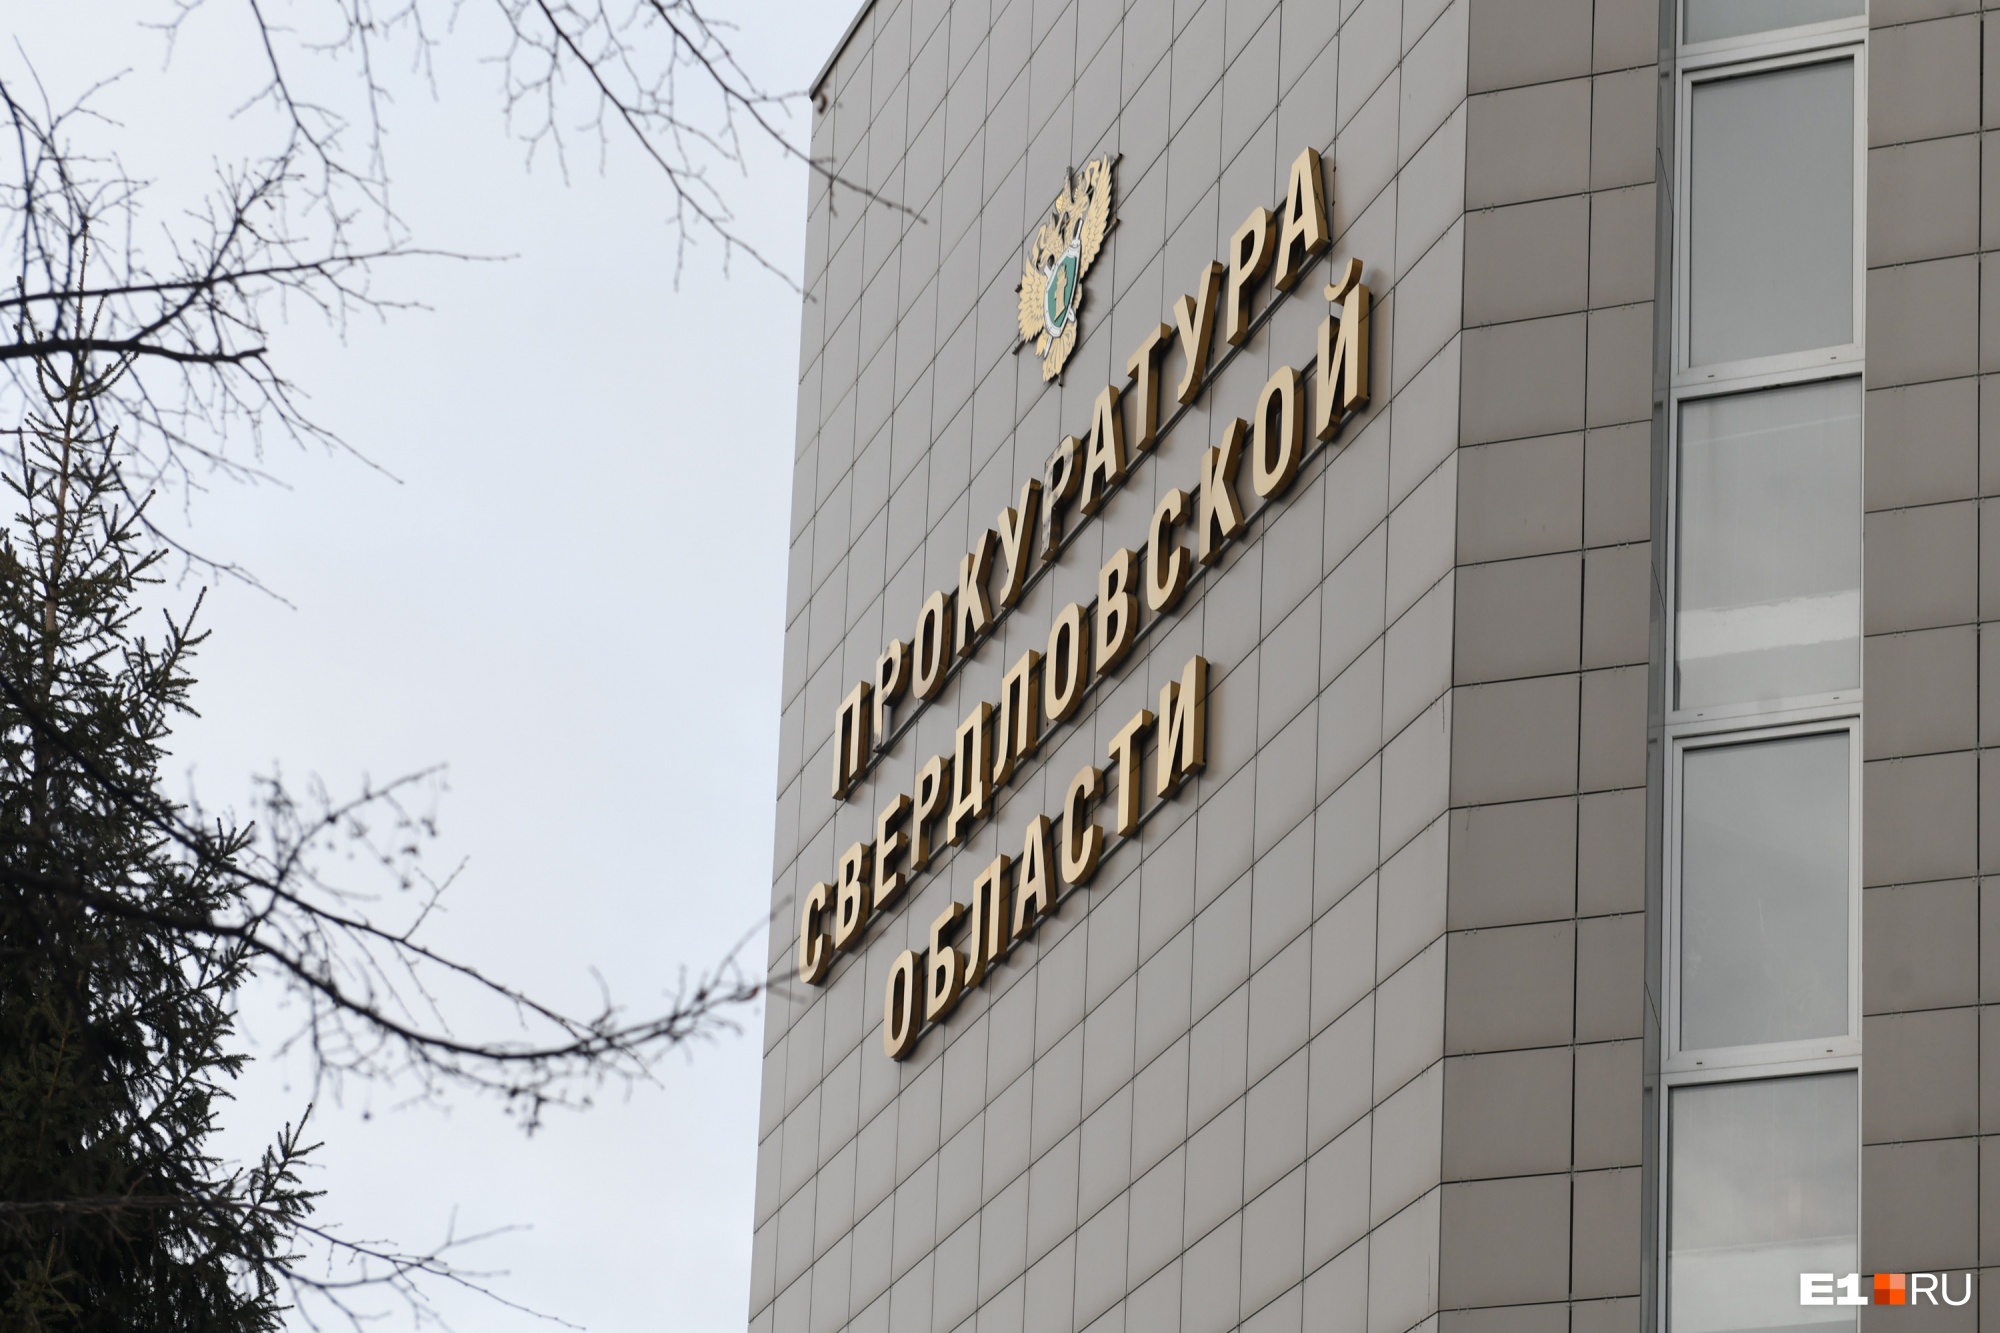 Прокуратура обнаружила коррупцию на 100 миллионов рублей в работе администрации Среднеуральска